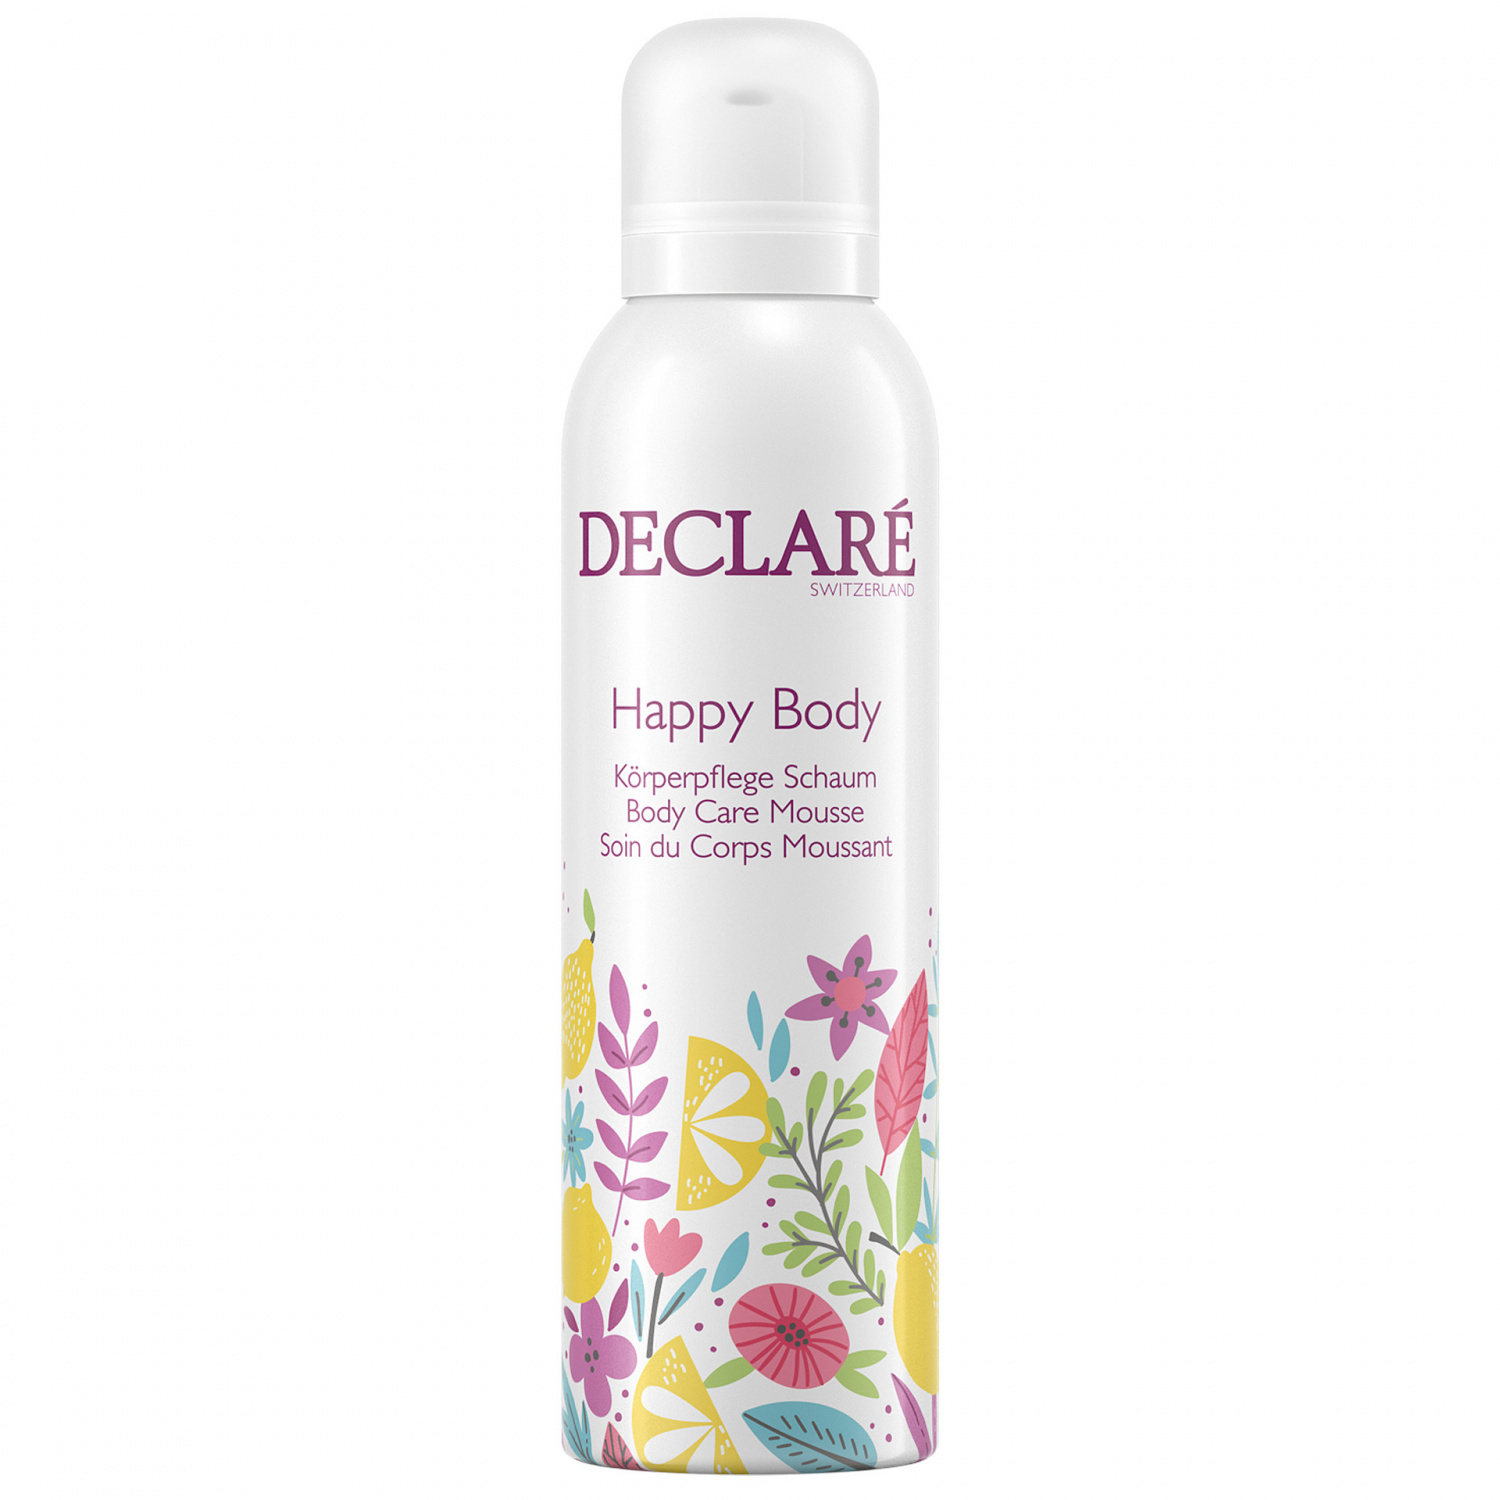 Declare Happy Body Body Care Mousse 200ml - интернет-магазин профессиональной косметики Spadream, изображение 32885